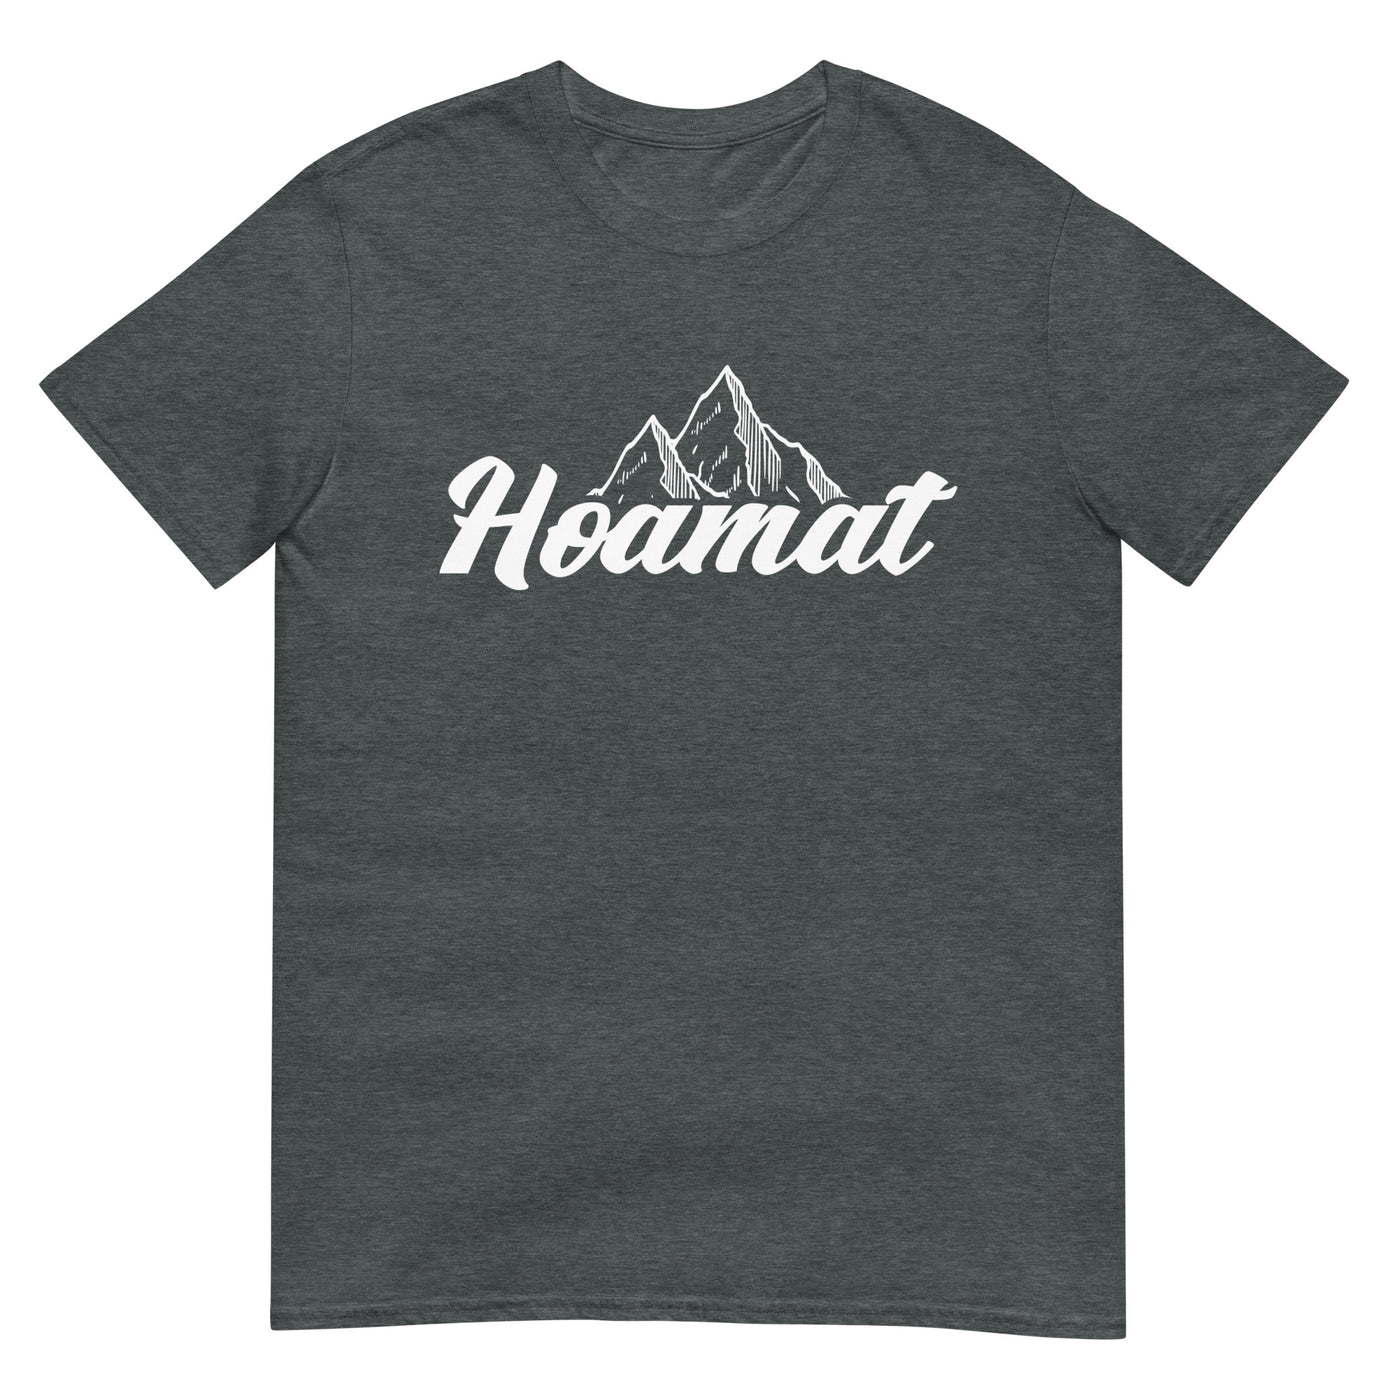 Hoamat - T-Shirt (Unisex) berge xxx yyy zzz Dark Heather